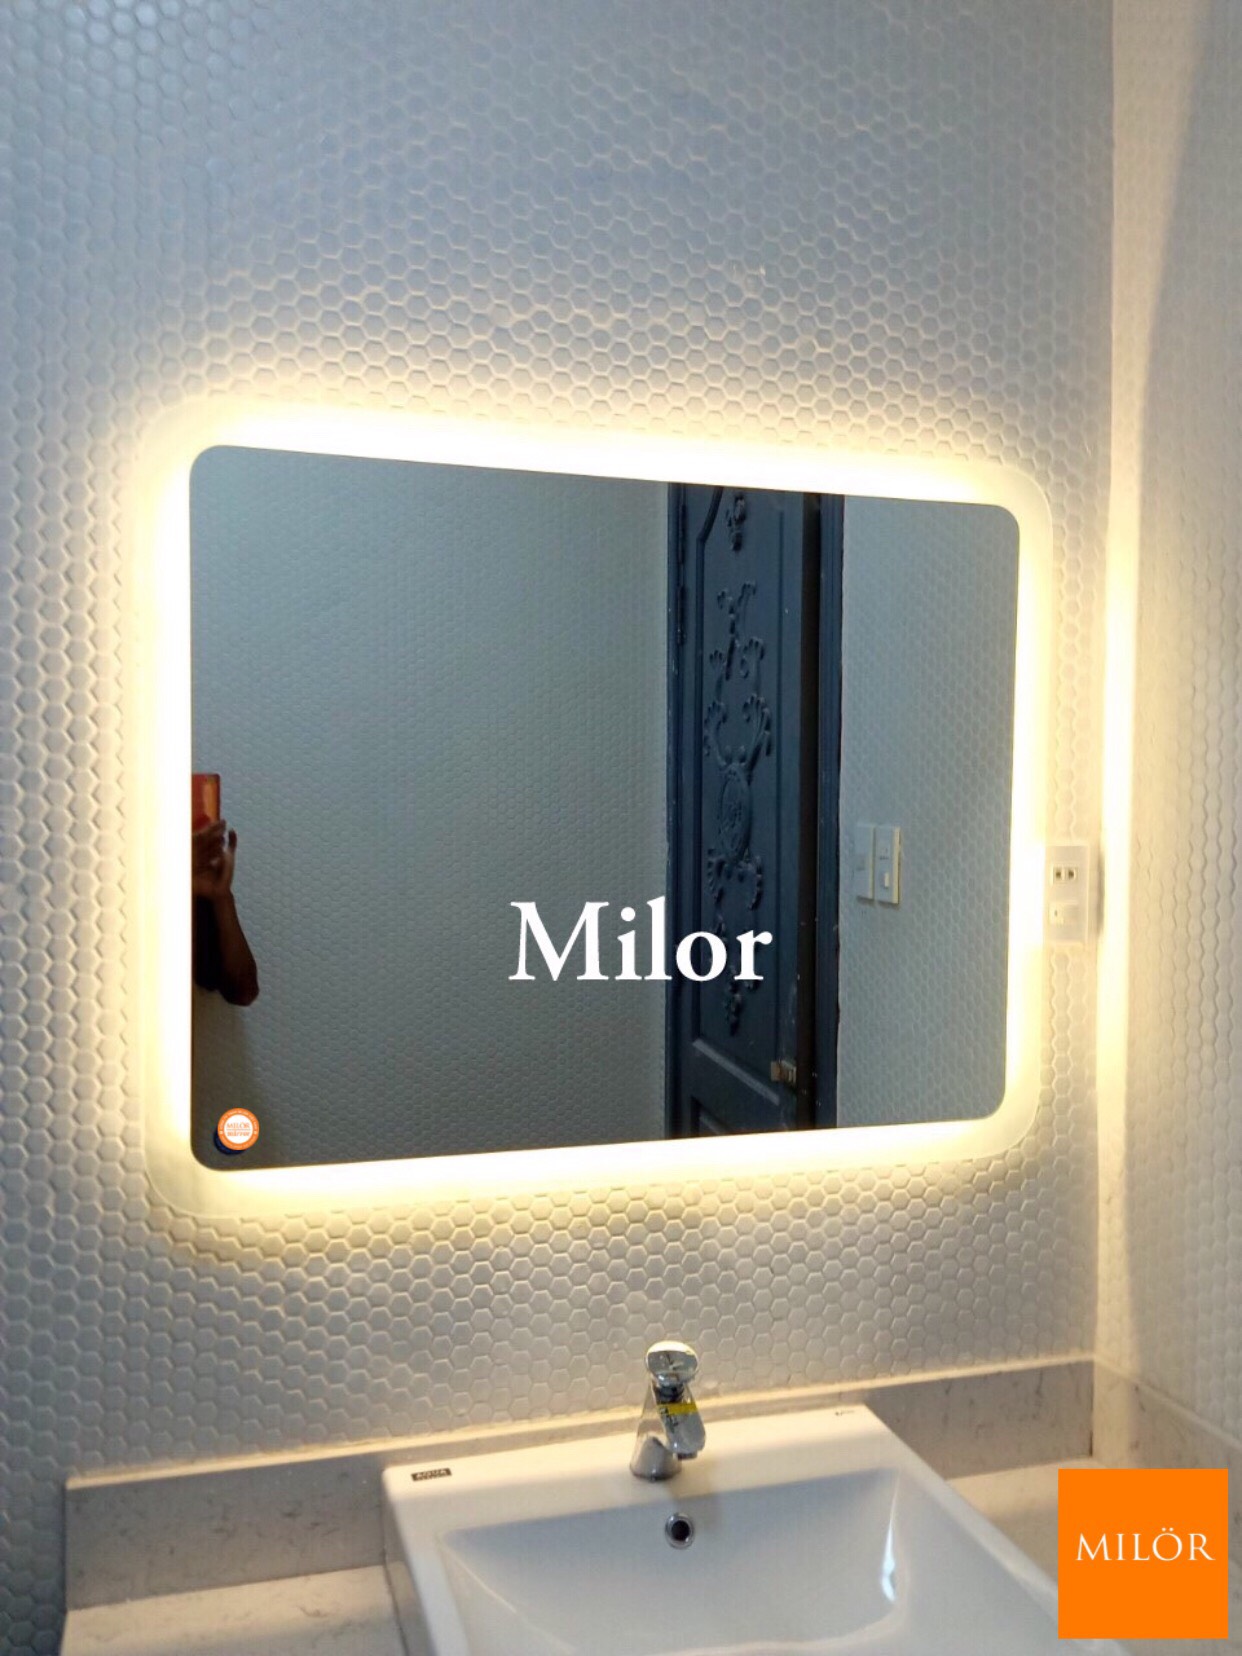 Gương nhà tắm đèn led Milor là một trong những sản phẩm hot nhất trên thị trường hiện nay. Được làm từ chất liệu cao cấp và được trang bị đèn led tiên tiến, gương Milor sẽ giúp bạn tăng cường ánh sáng trong phòng tắm và tạo được không gian thư giãn, thoải mái. Bạn sẽ thử nghiệm được tất cả những tính năng của gương nhà tắm đèn led Milor trong hình ảnh bên dưới.